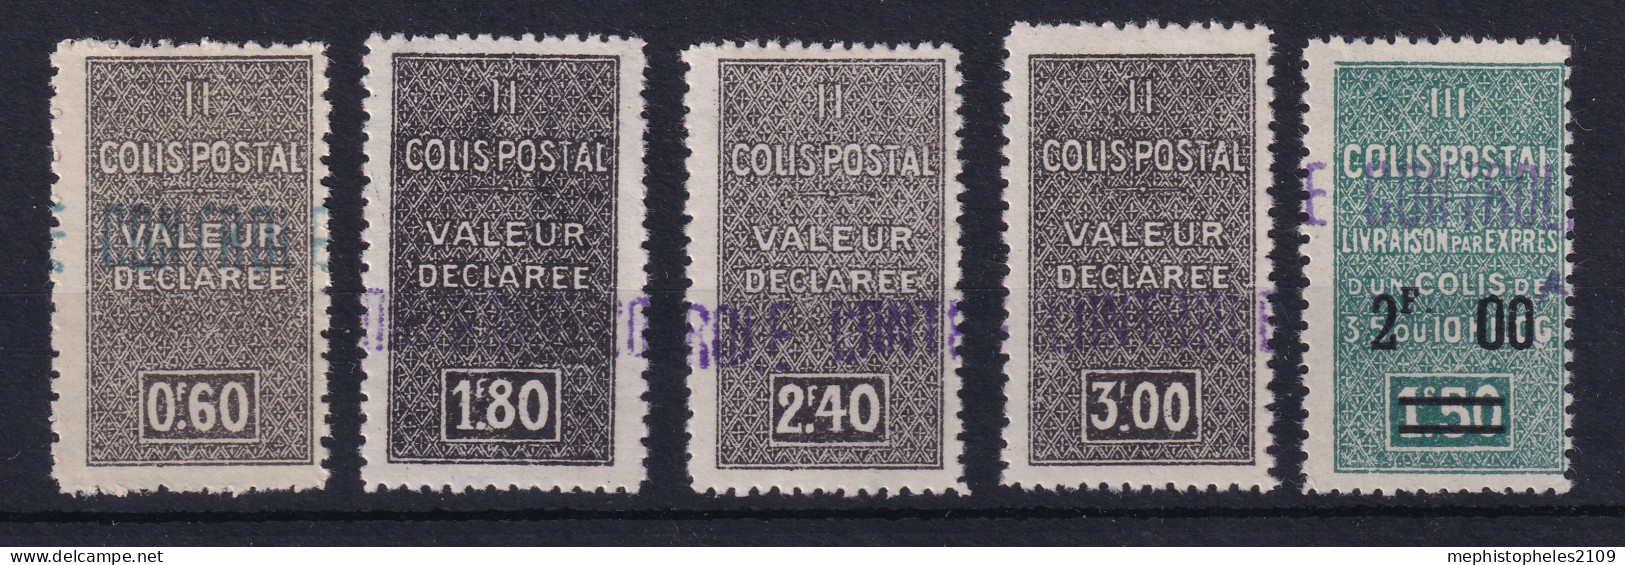 ALGÉRIE 1939 - MLH - YT 55, 56, 57, 58, 59 - COLIS POSTAUX - Pacchi Postali